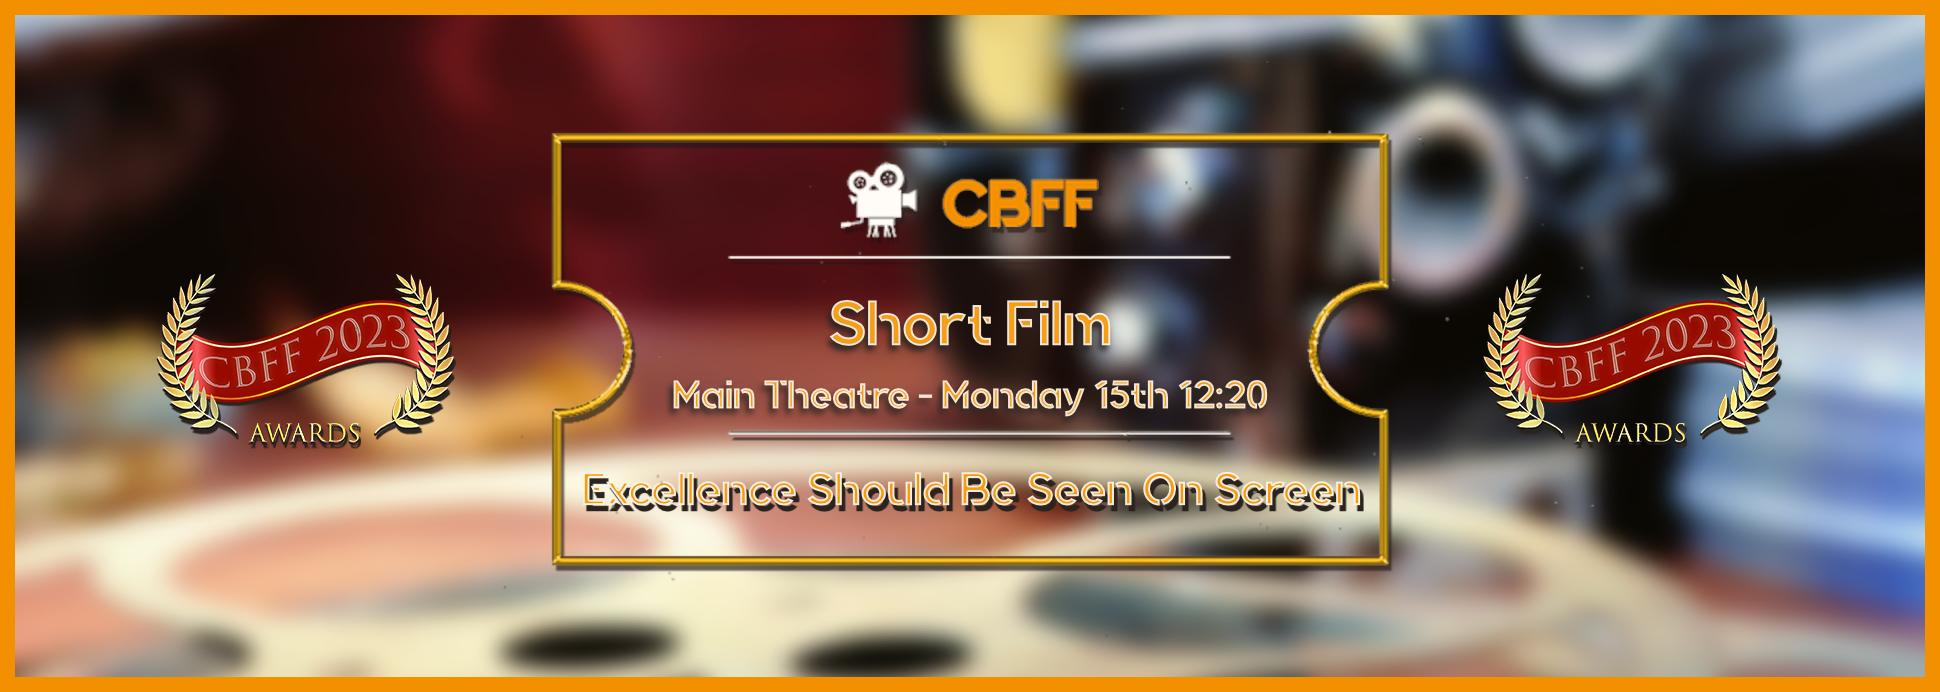 Main Theatre Short Film 15th 12:20